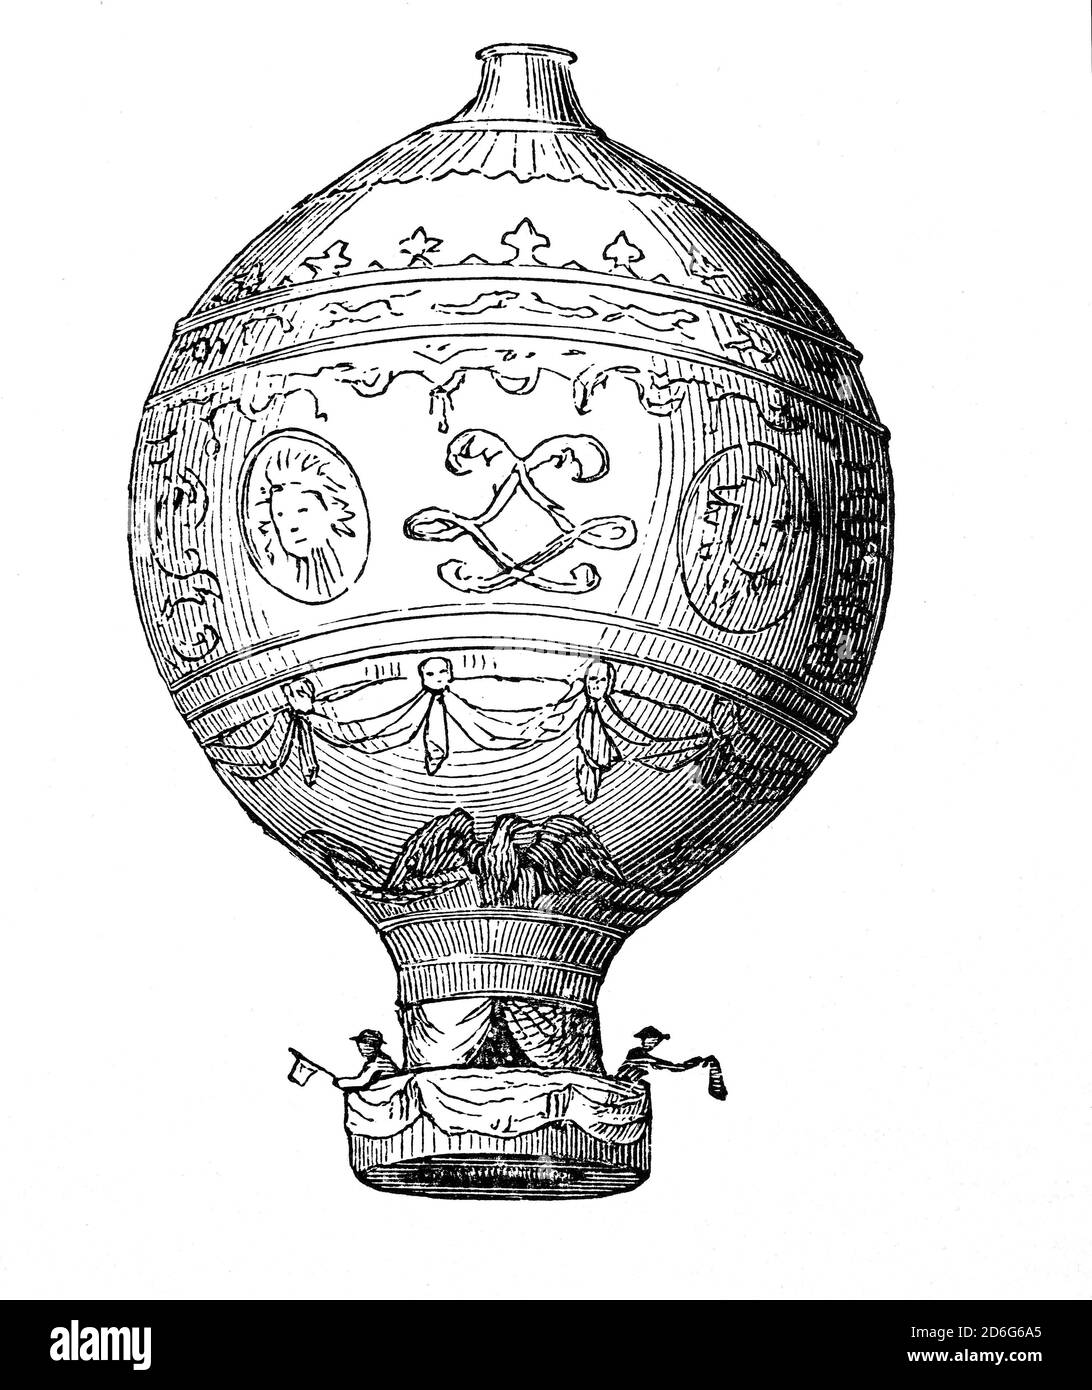 Un ballon Rozière est un ballon hybride qui possède des chambres séparées pour un gaz de levage non chauffé (par exemple, hydrogène ou hélium) ainsi que pour un gaz de levage chauffé utilisé dans un ballon à air chaud. Il a l'avantage d'un contrôle partiel de la flottabilité avec beaucoup moins d'utilisation de carburant qu'un ballon d'air chaud typique. Le dessin a été créé par Jean-François Pilatre de Rozier (1754–1785) qui est décédé lorsque le ballon a pris feu, s'est soudainement dégonflé et s'est écrasé en tentant de traverser la Manche le 15 juin 1785. Banque D'Images